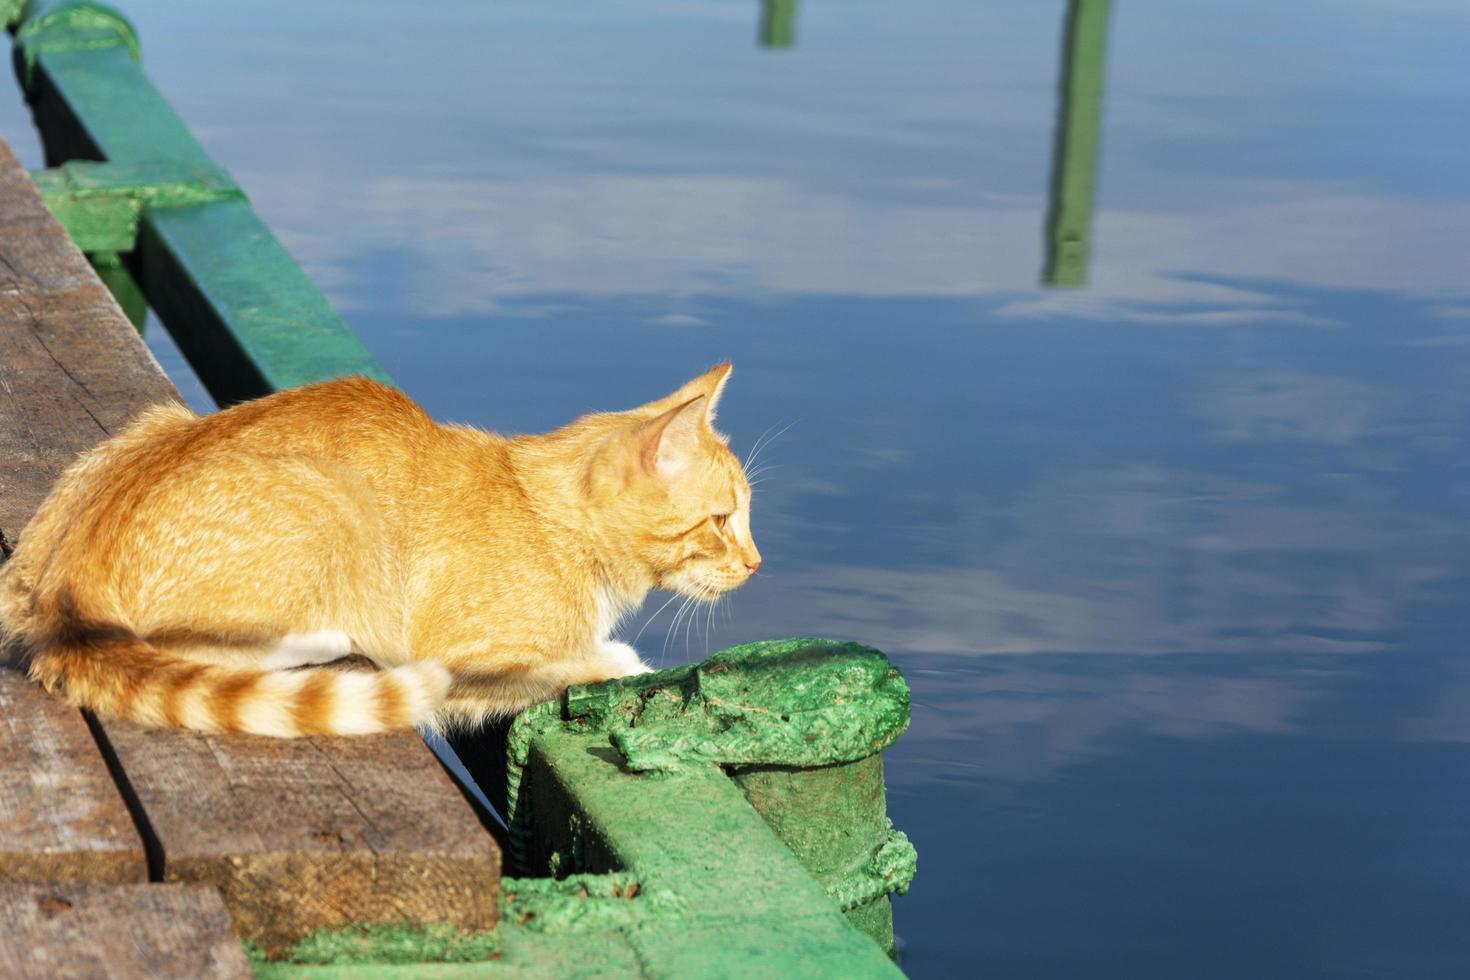 um gato ruivo sentado no píer, esperando pelo peixe. um gato vermelho em um píer perto da água, um retrato de um animal foto